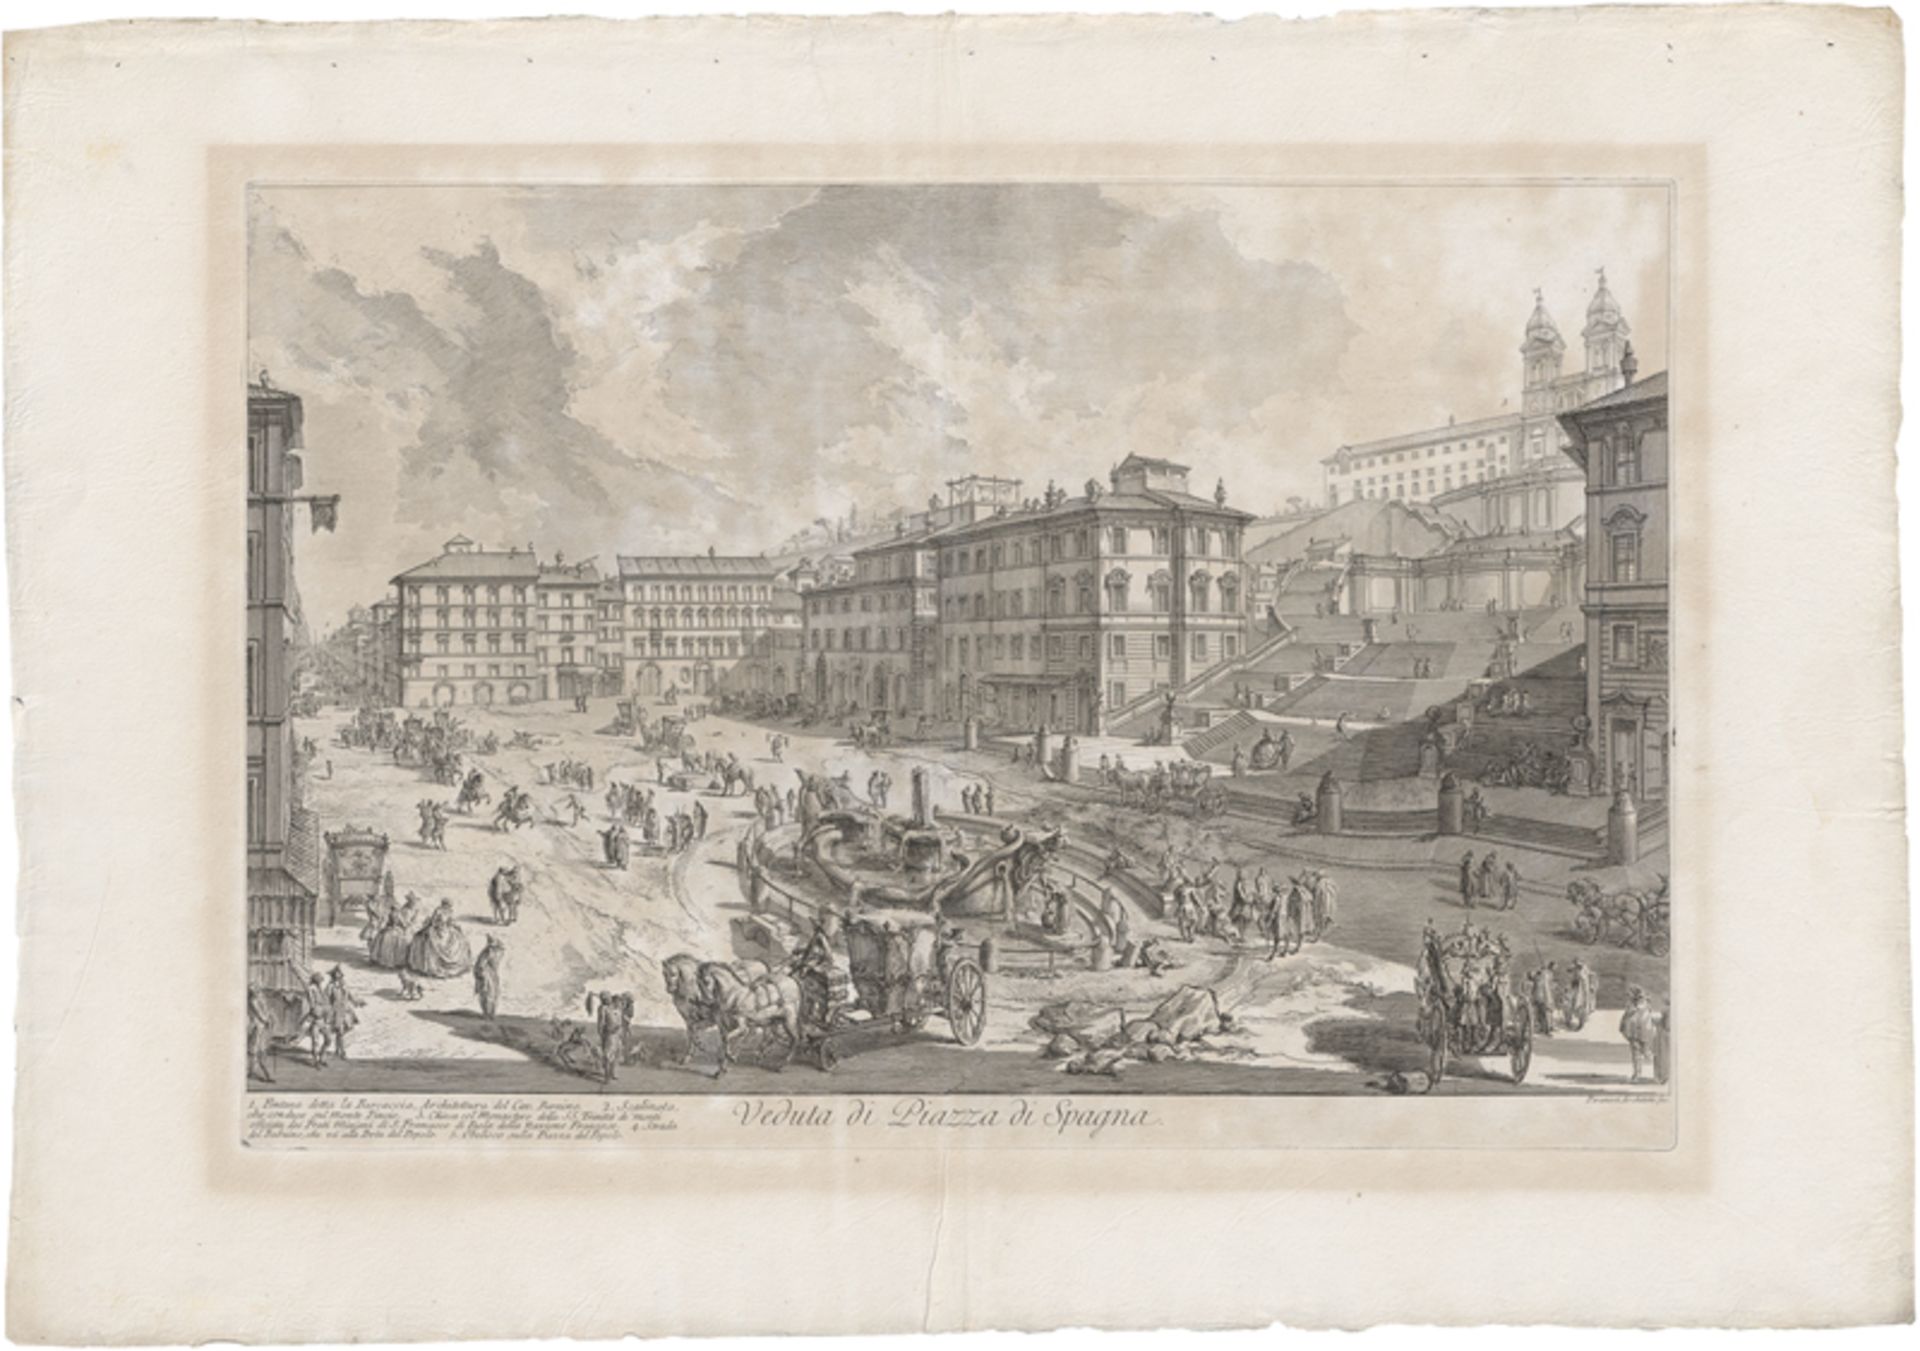 Piranesi, Giovanni Battista: Veduta di Piazza di Spagna